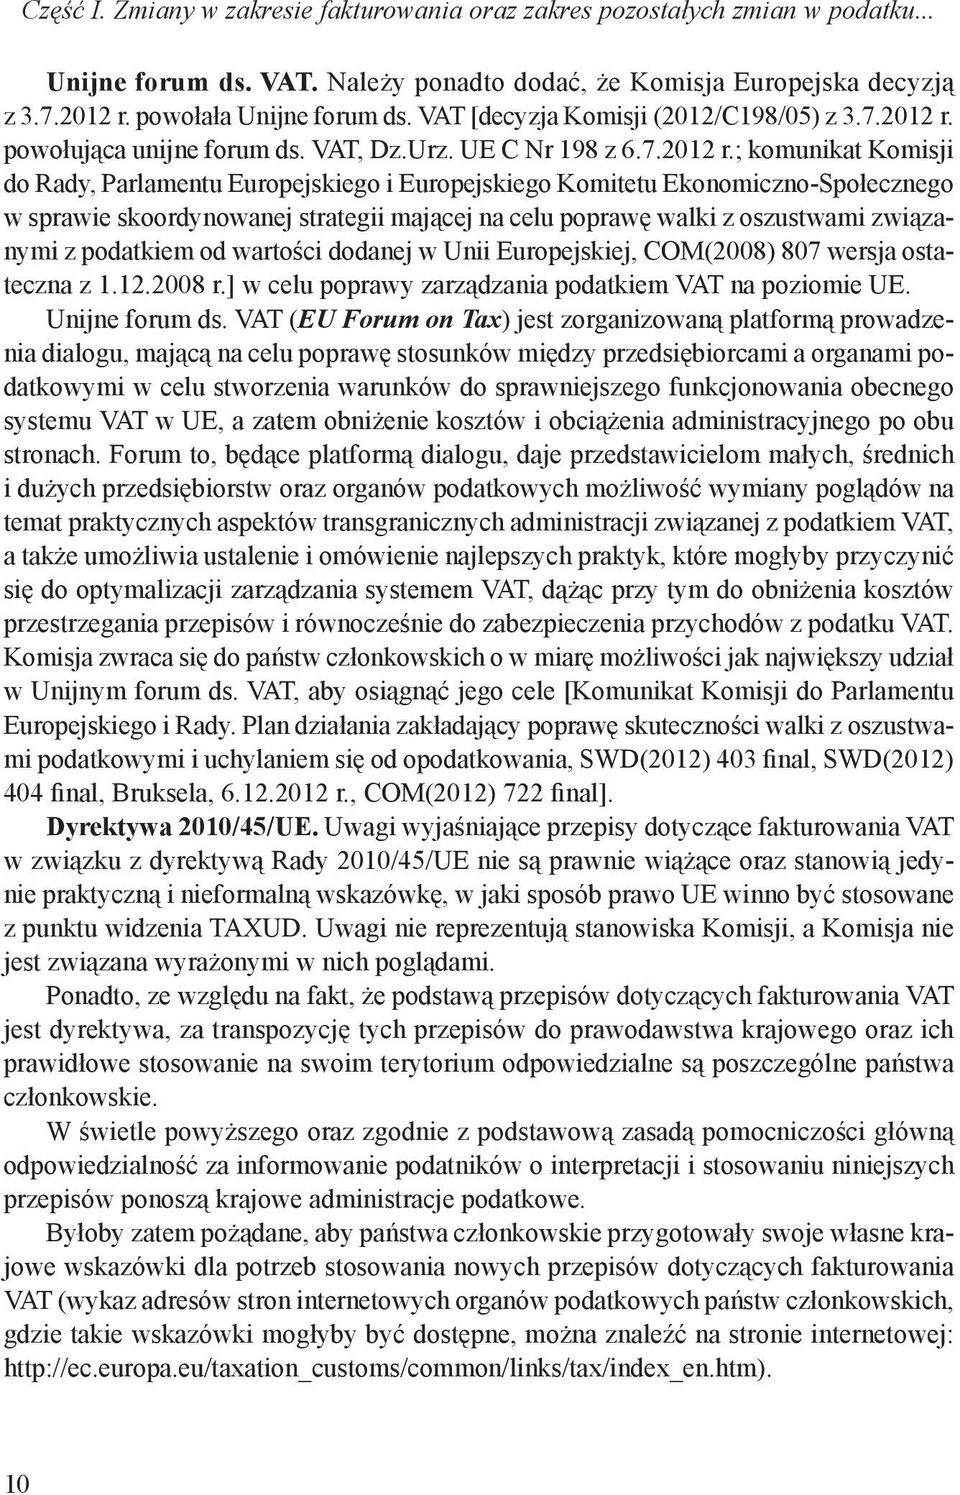 powołująca unijne forum ds. VAT, Dz.Urz. UE C Nr 198 z 6.7.2012 r.